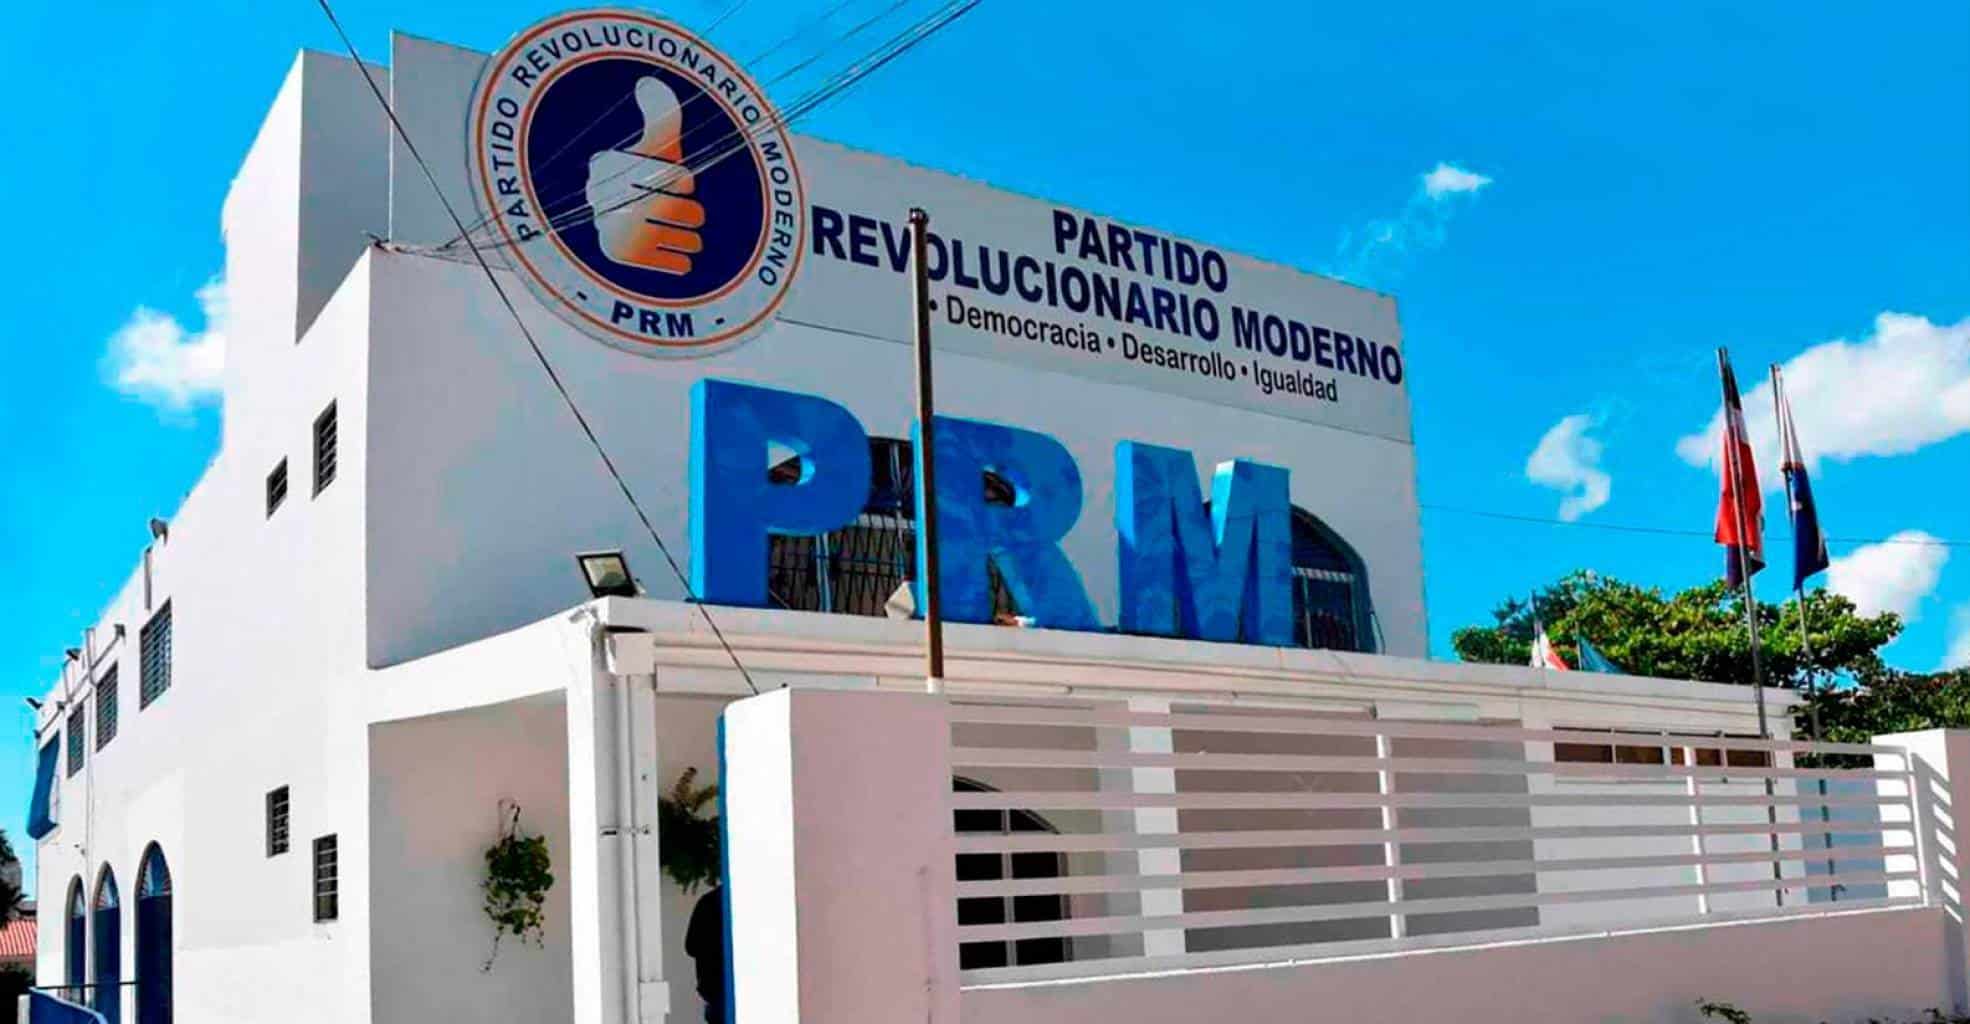 El PRM presenta una oferta electoral con candidatos bajo escrutinio judicial